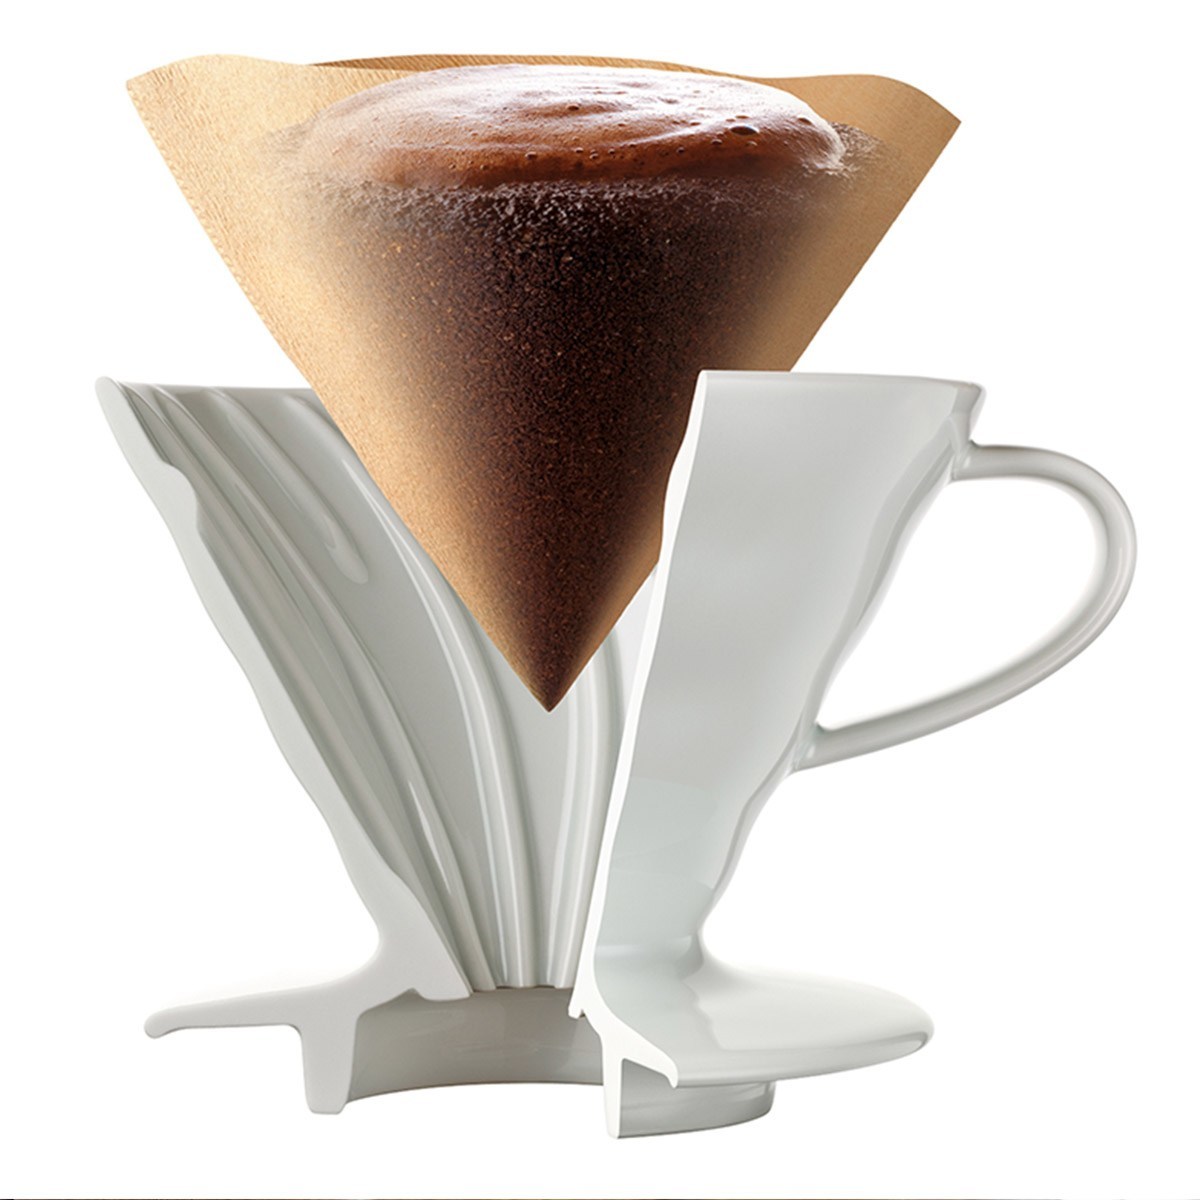 Hario 錐形無漂白咖啡濾紙 1 - 2杯 100張 X 10入